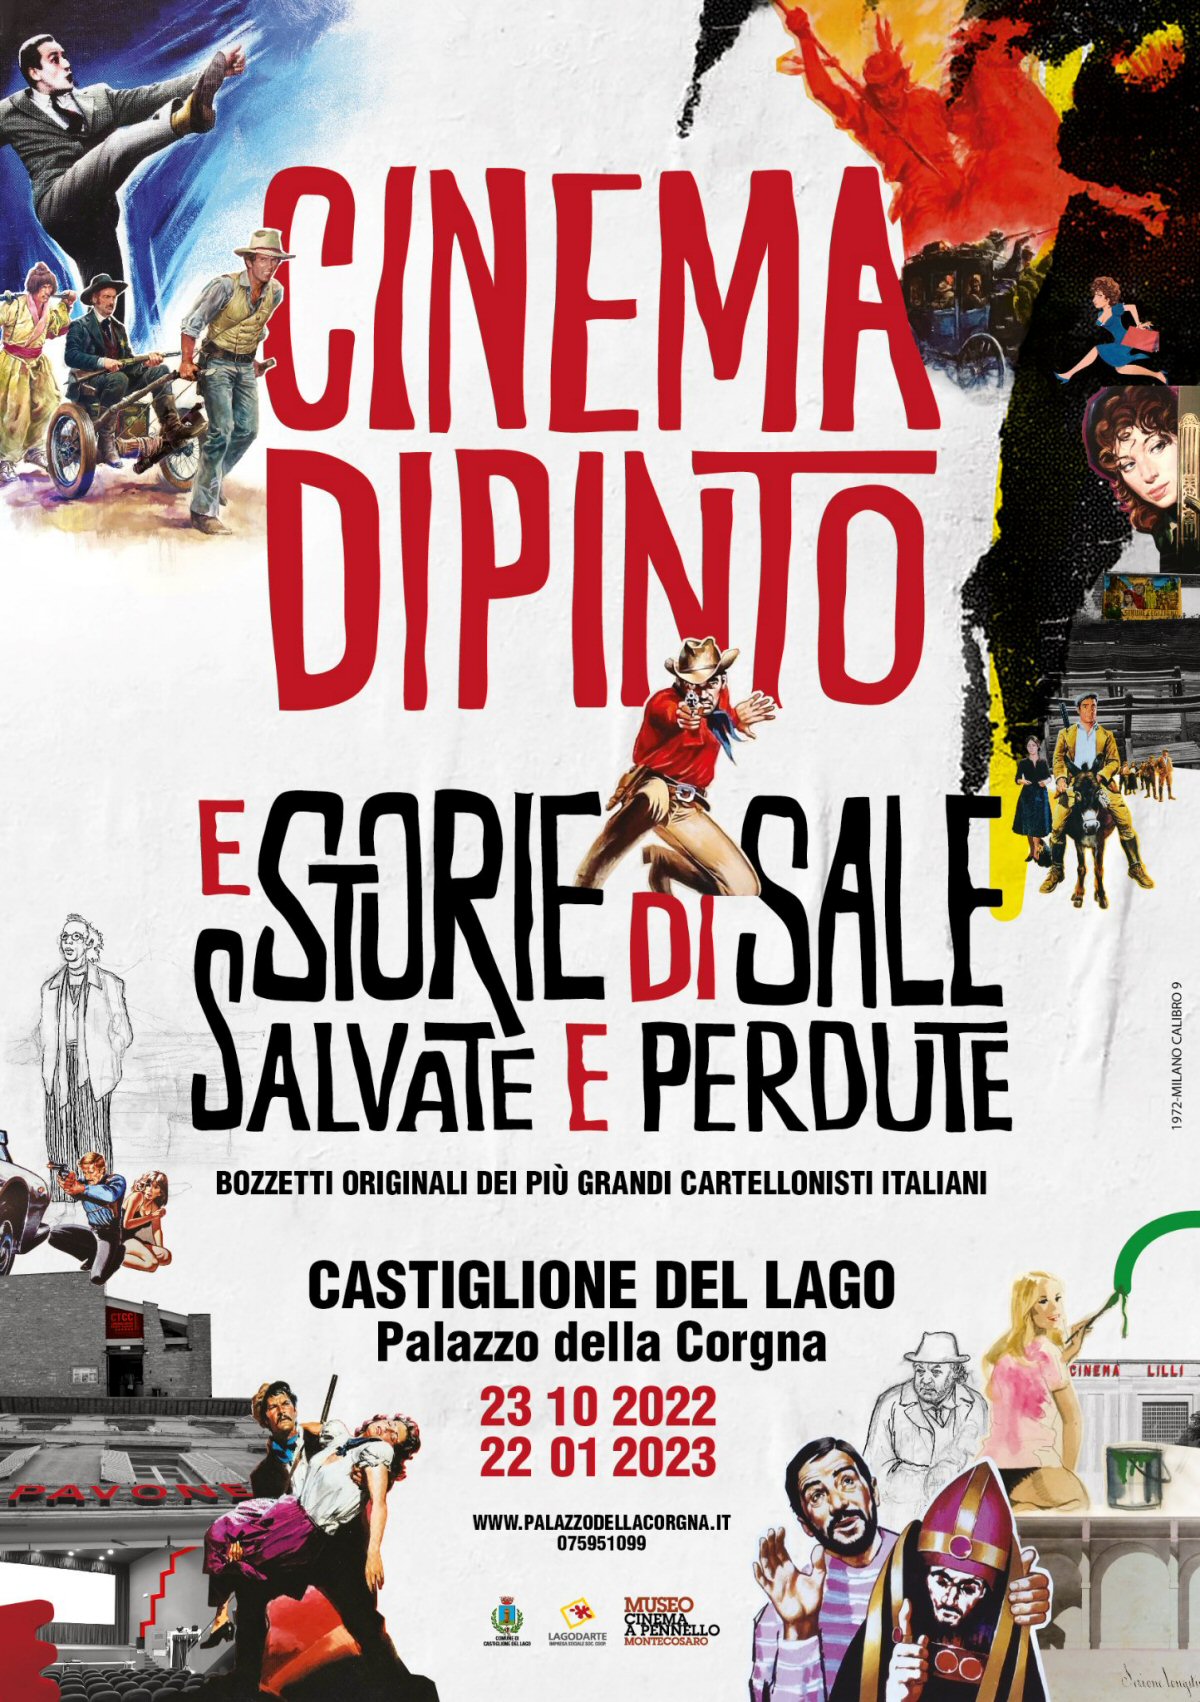 Cinema Dipinto locandina - Palazzo della Corgna